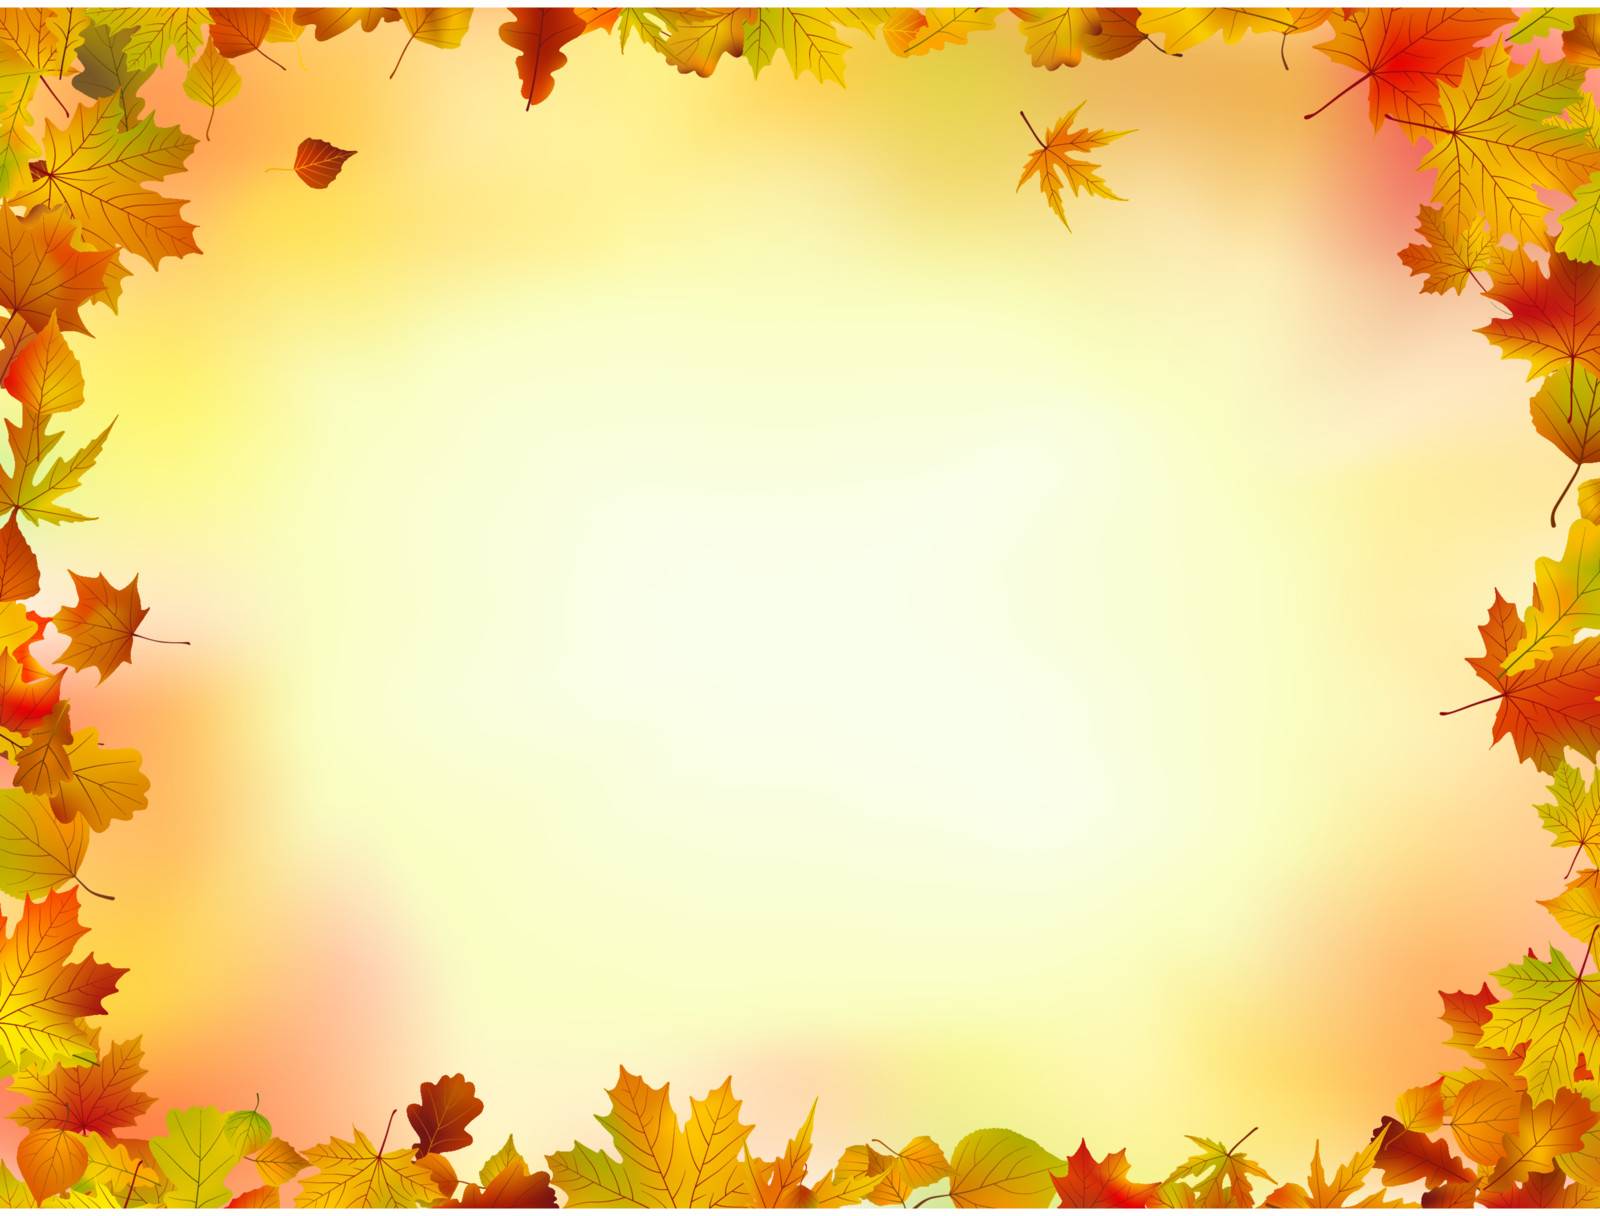 Fall leaves frame by Petrov_Vladimir